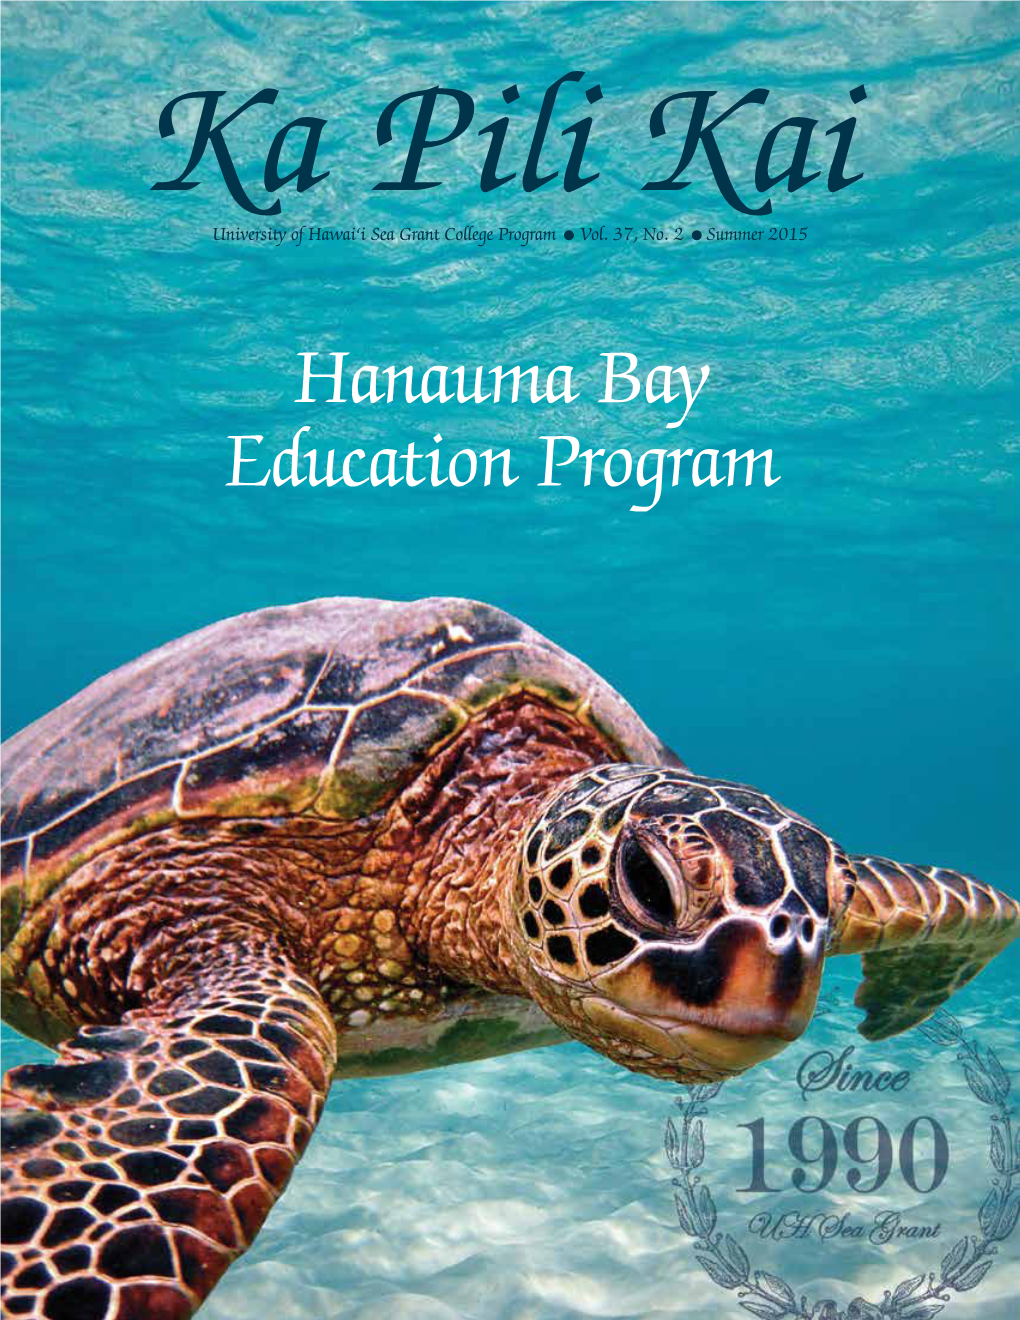 Hanauma Bay Education Program